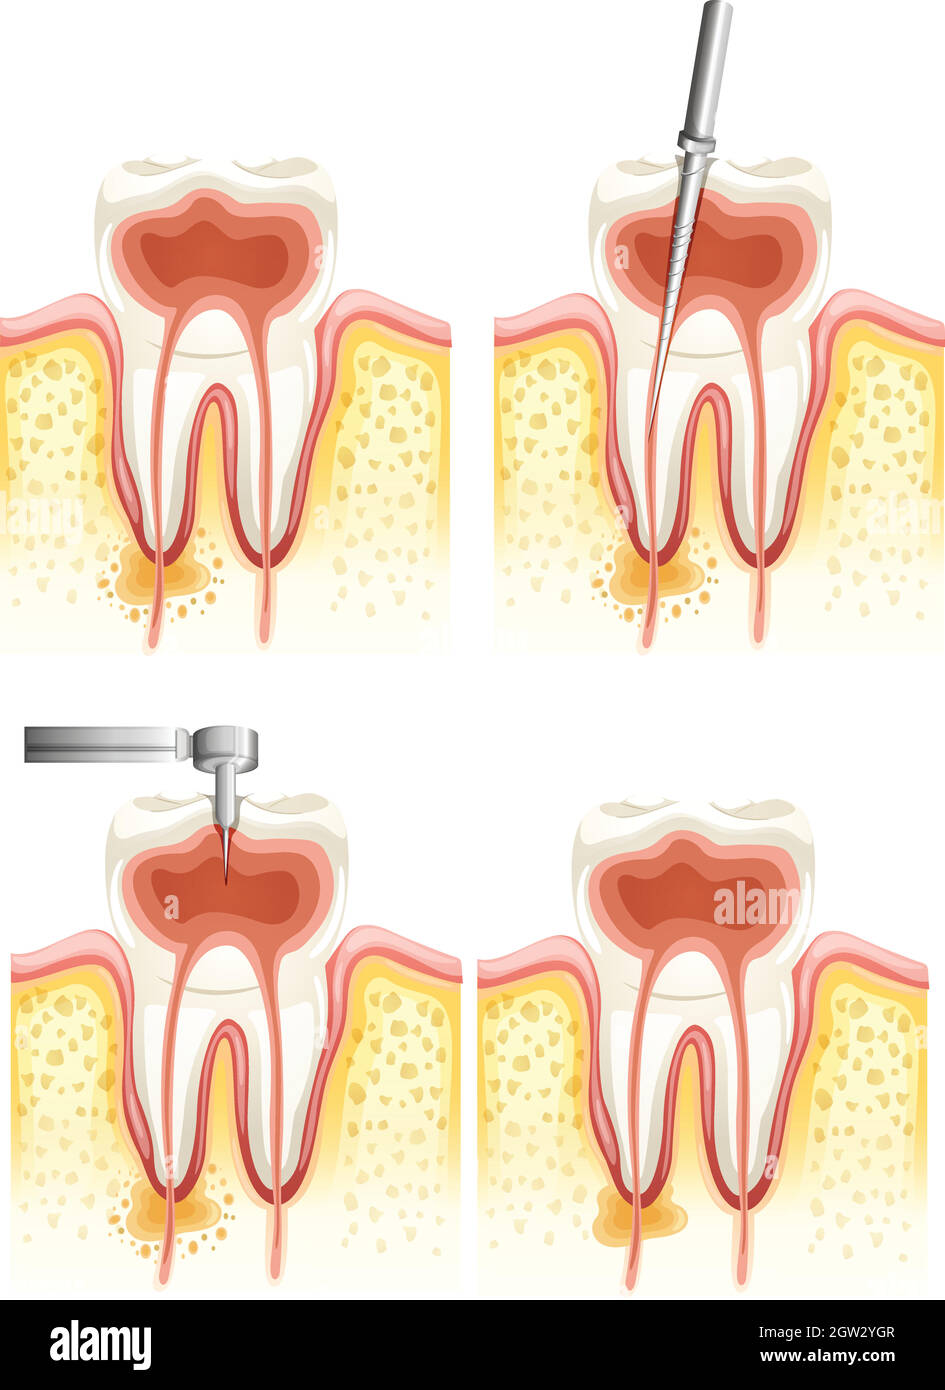 Canal racinaire dentaire Illustration de Vecteur